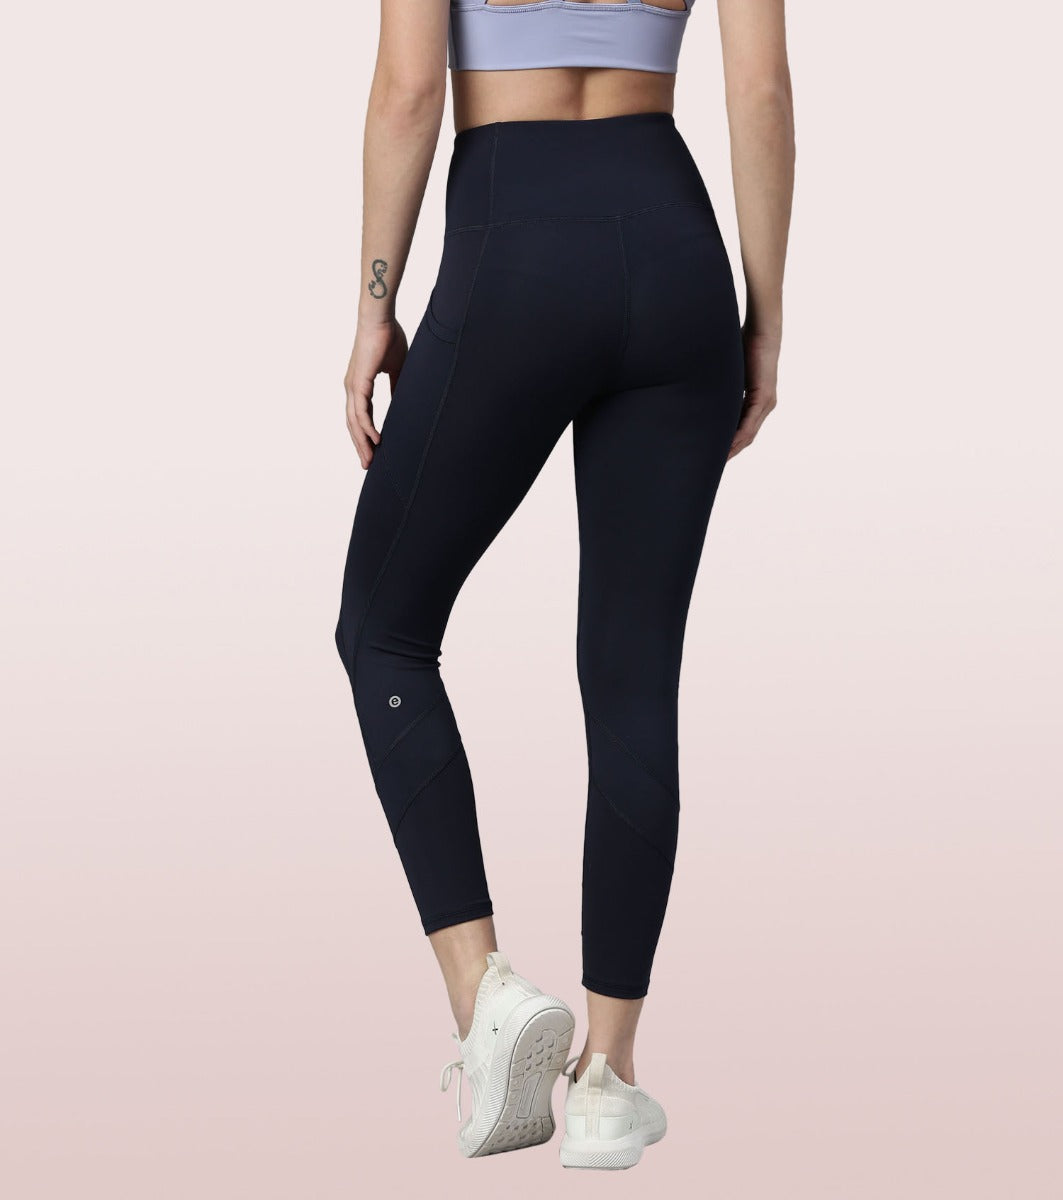 Enamor Athleisure E258 Women's Dry Fit Butter Soft Polyester Energy Legging  - Black (M) - E258